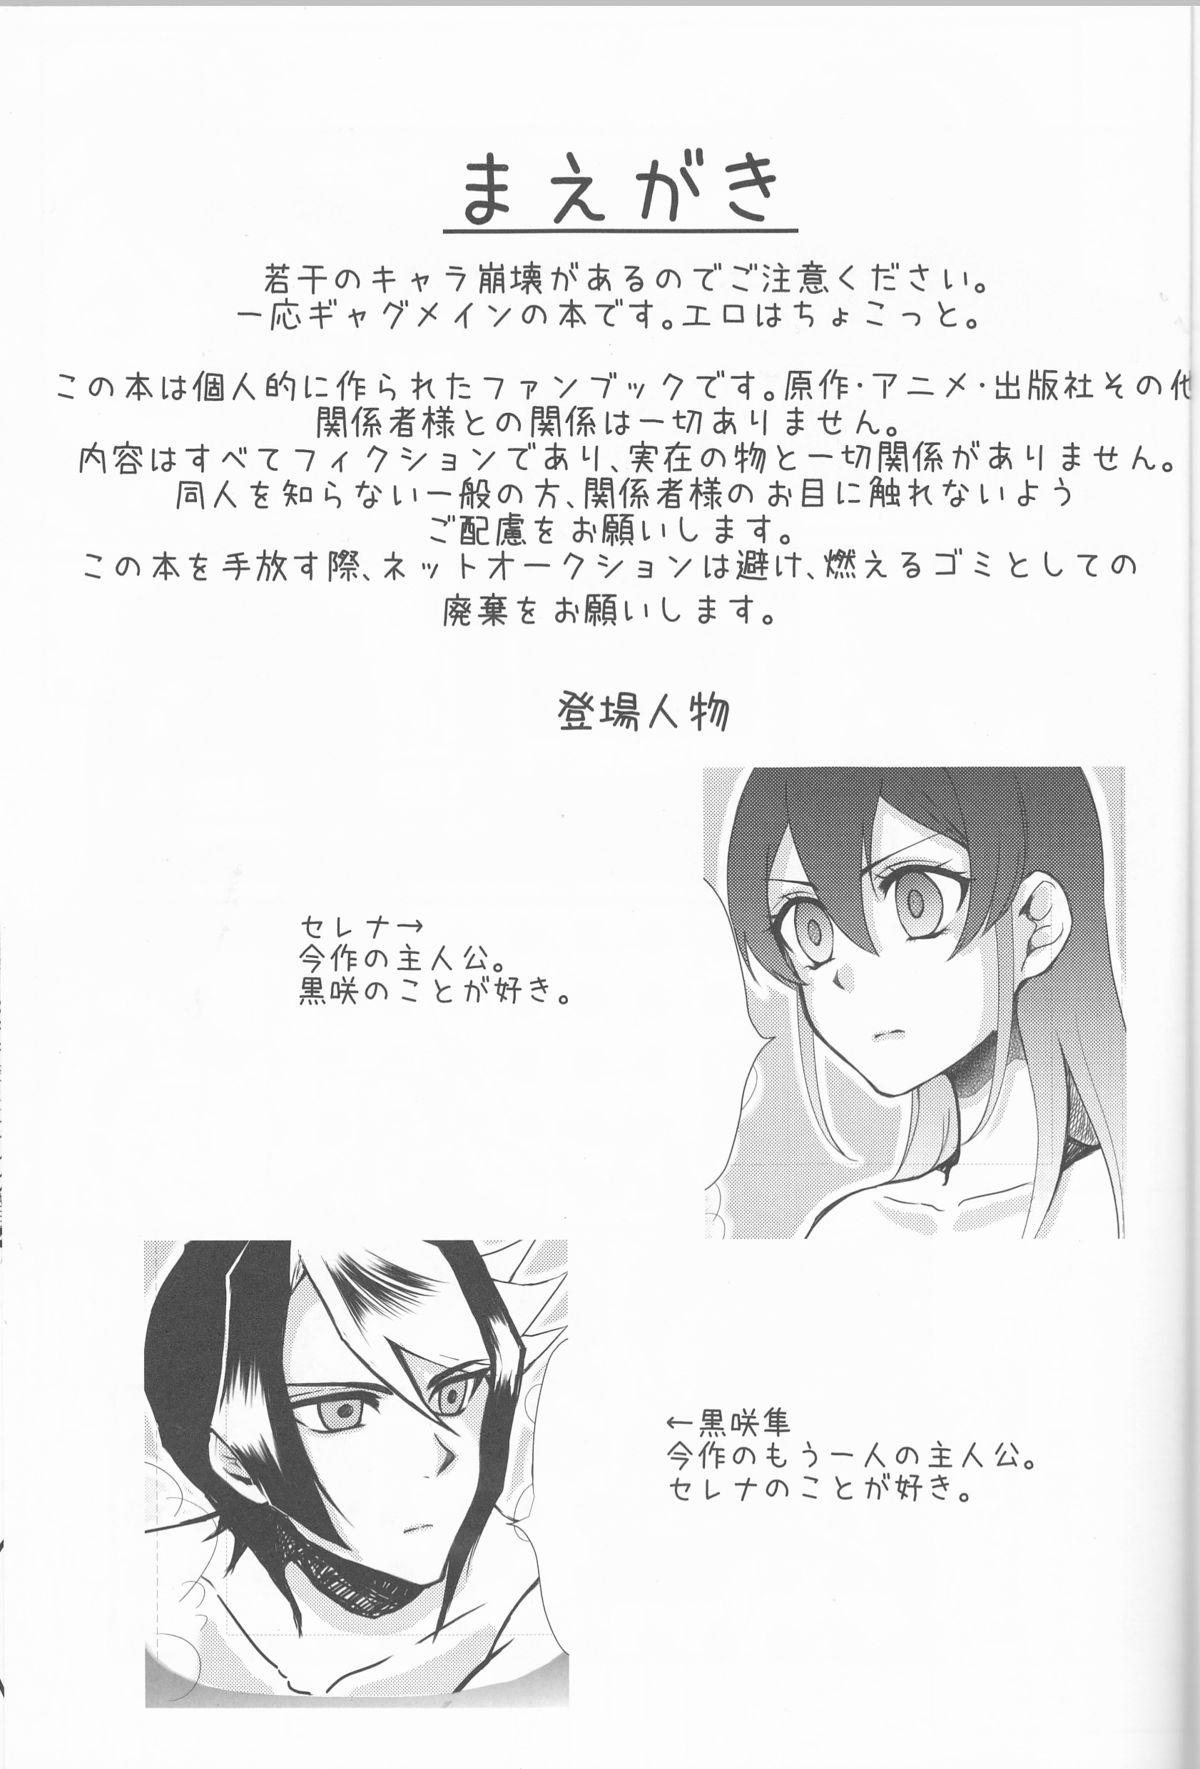 Anale Hoshoku Kankei ni Aru Serena to Shun ga Renai Kanjou o Idaku to Kou Naru. - Yu gi oh arc v Whatsapp - Page 2